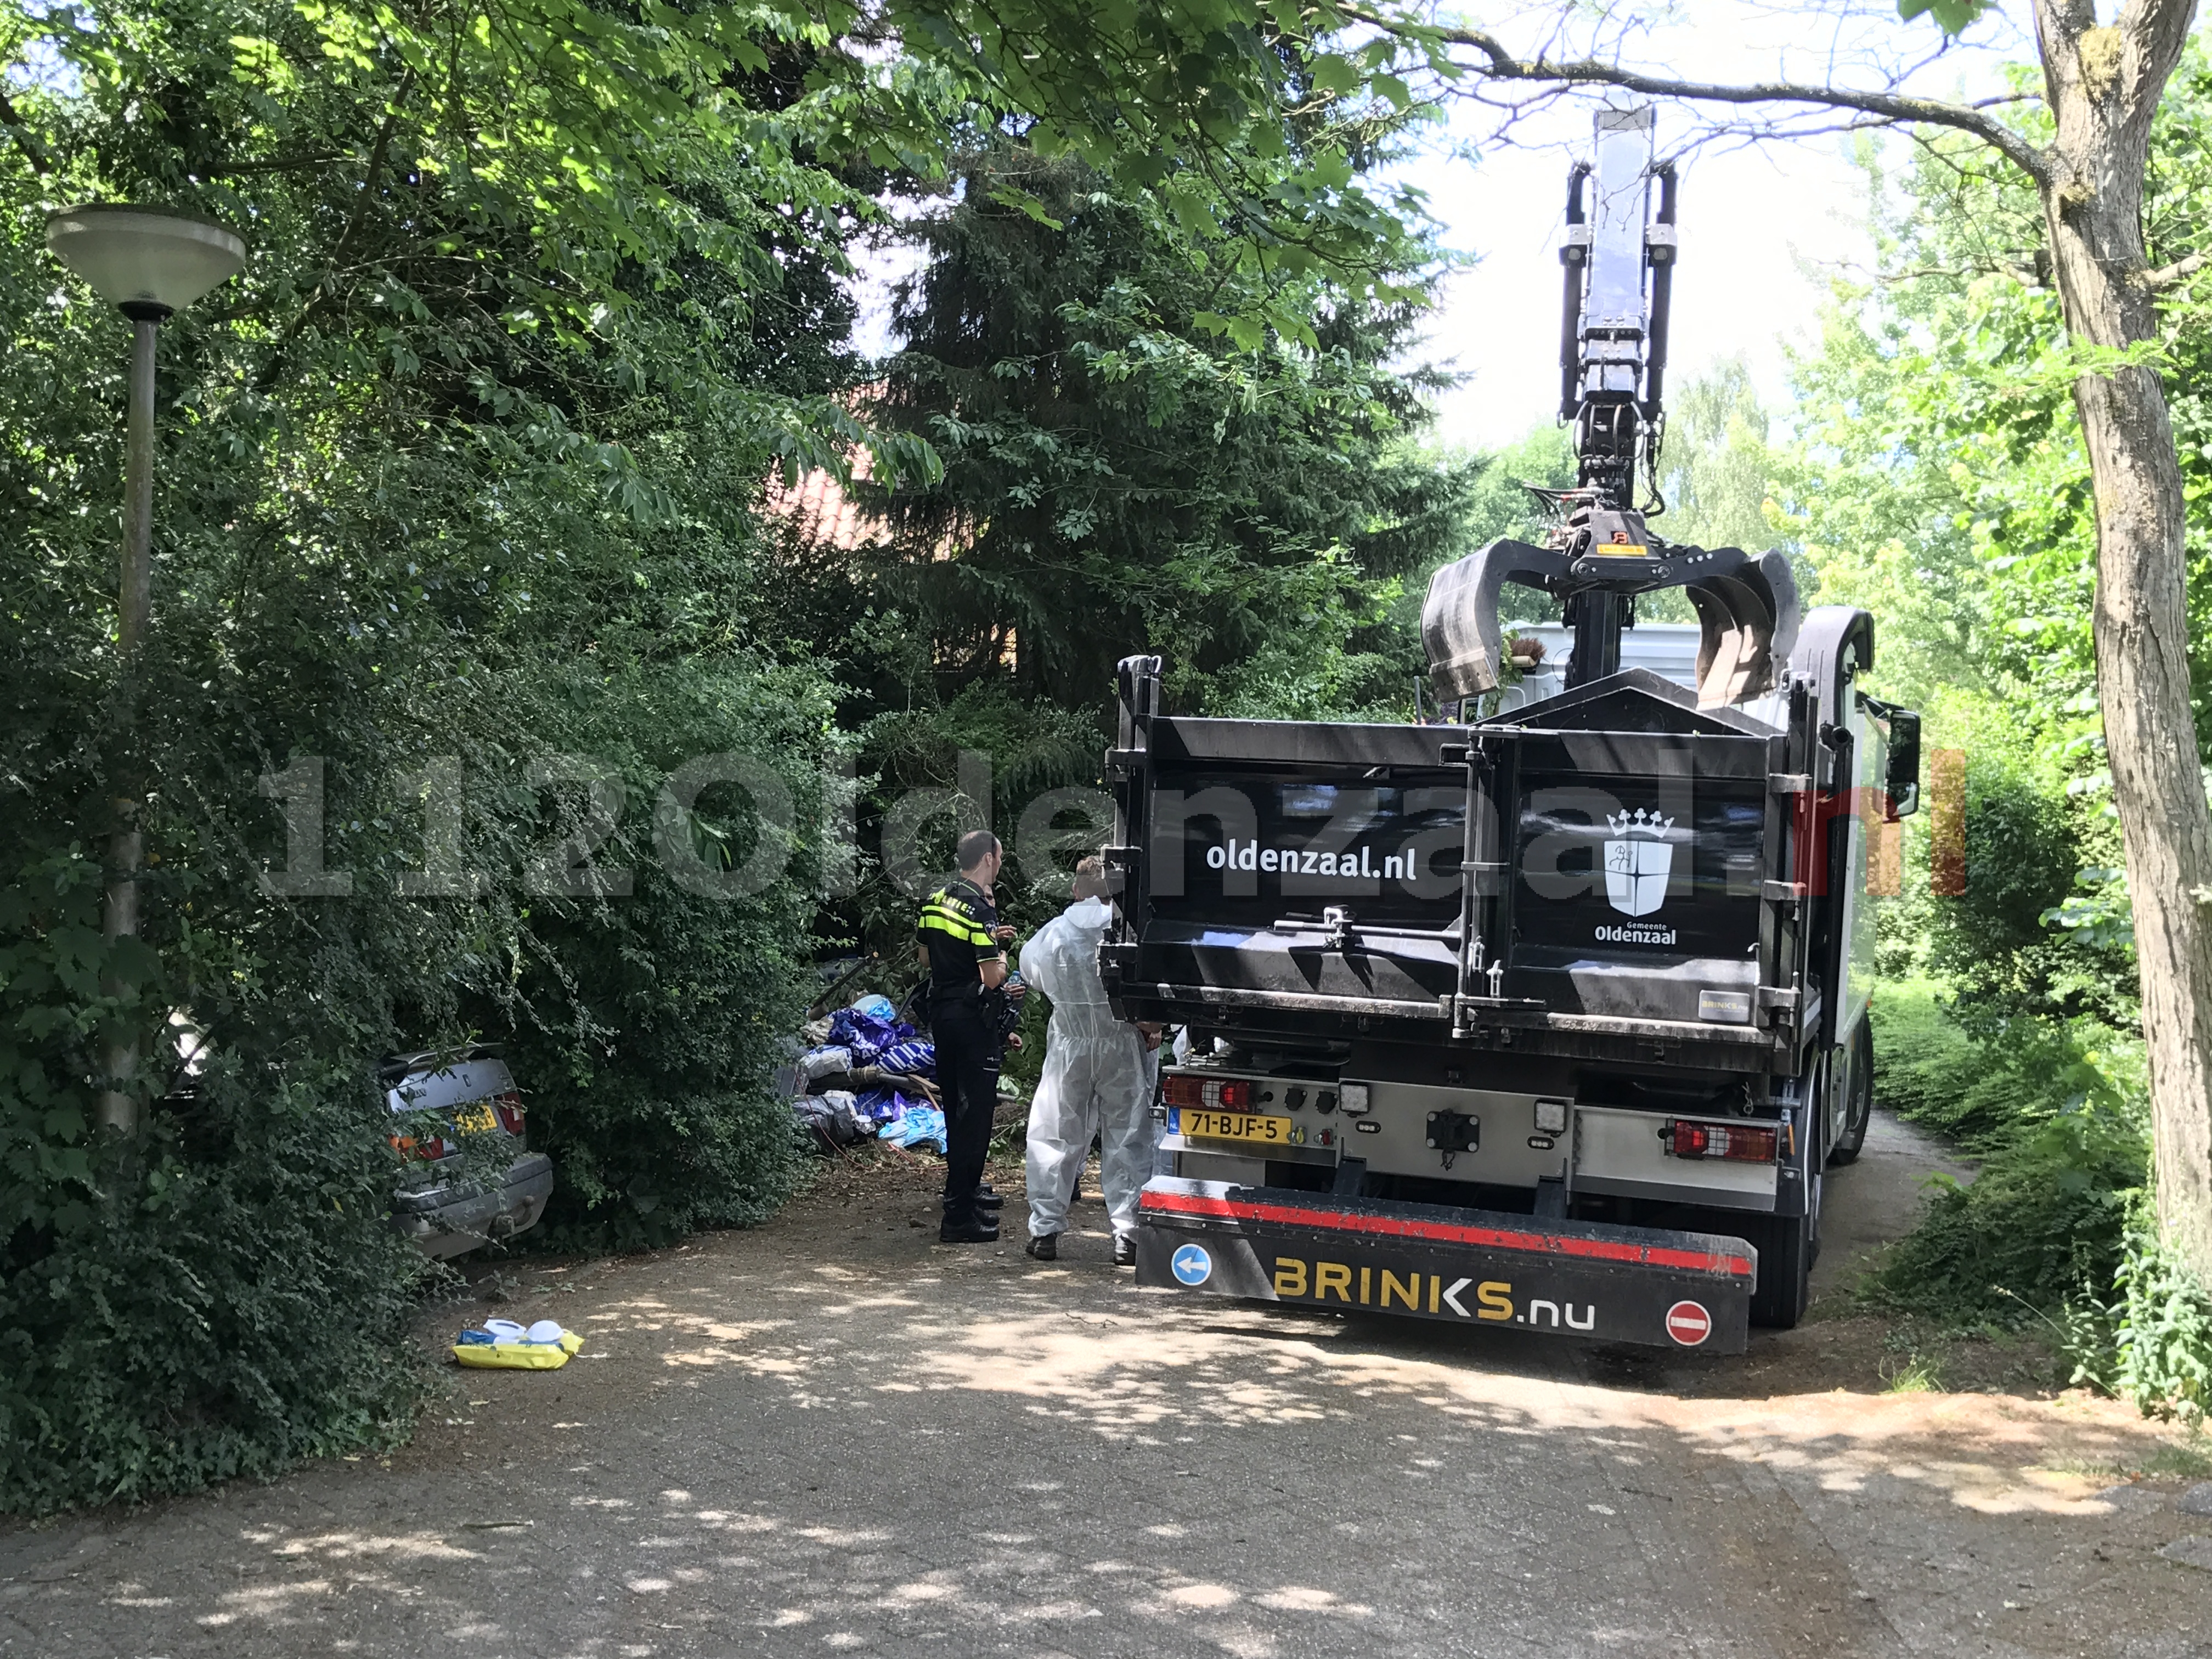 Foto 2: Politie doet onderzoek in woning Oldenzaal na aantreffen lichaam